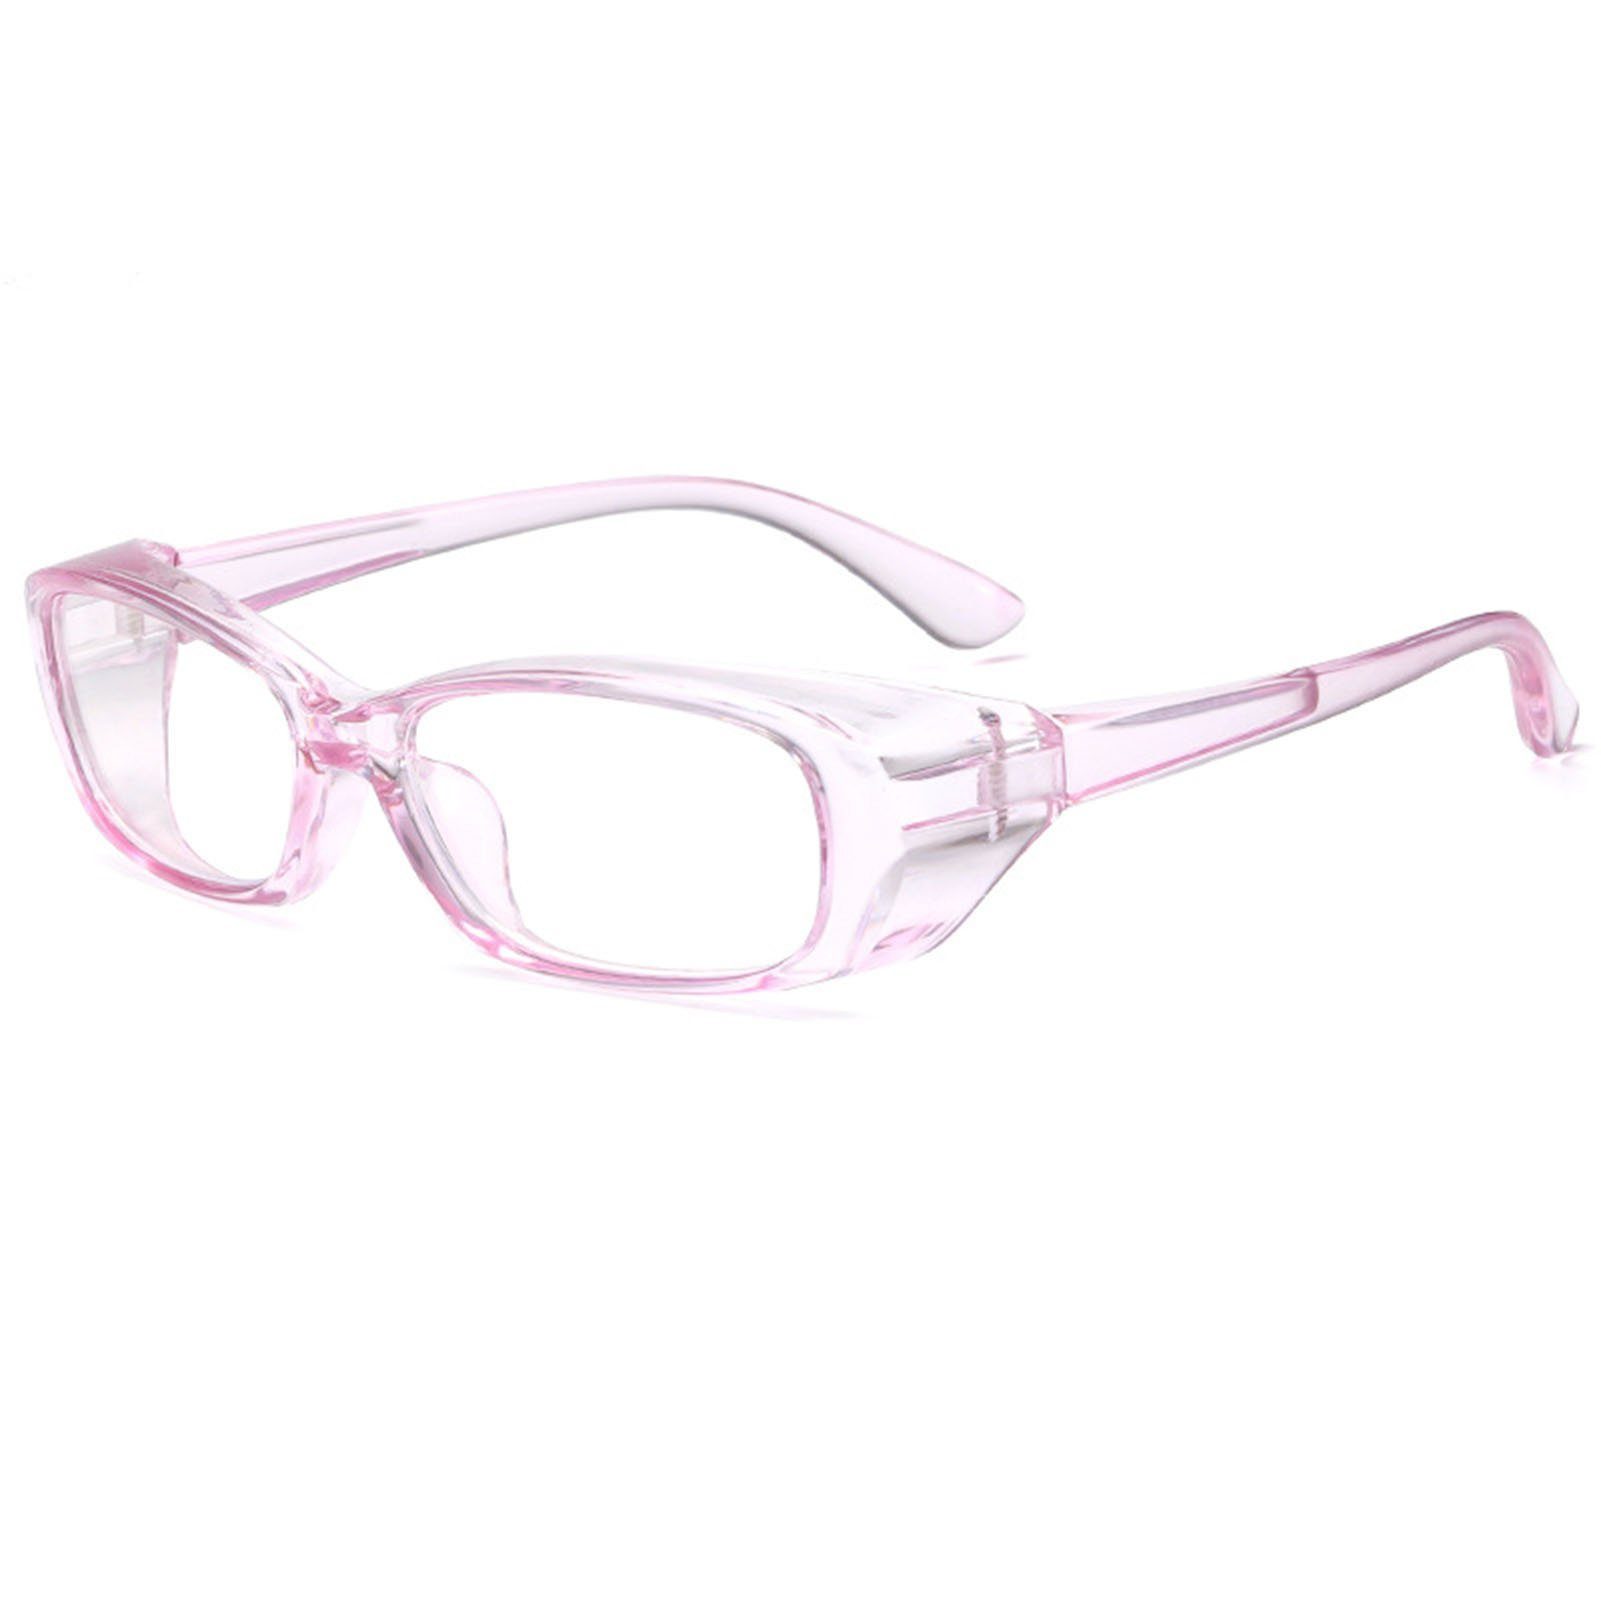 Außenbereich, Blusmart transparent Für purple Anti-Beschlag-Schutzbrille Brille Brille Den Bequeme,